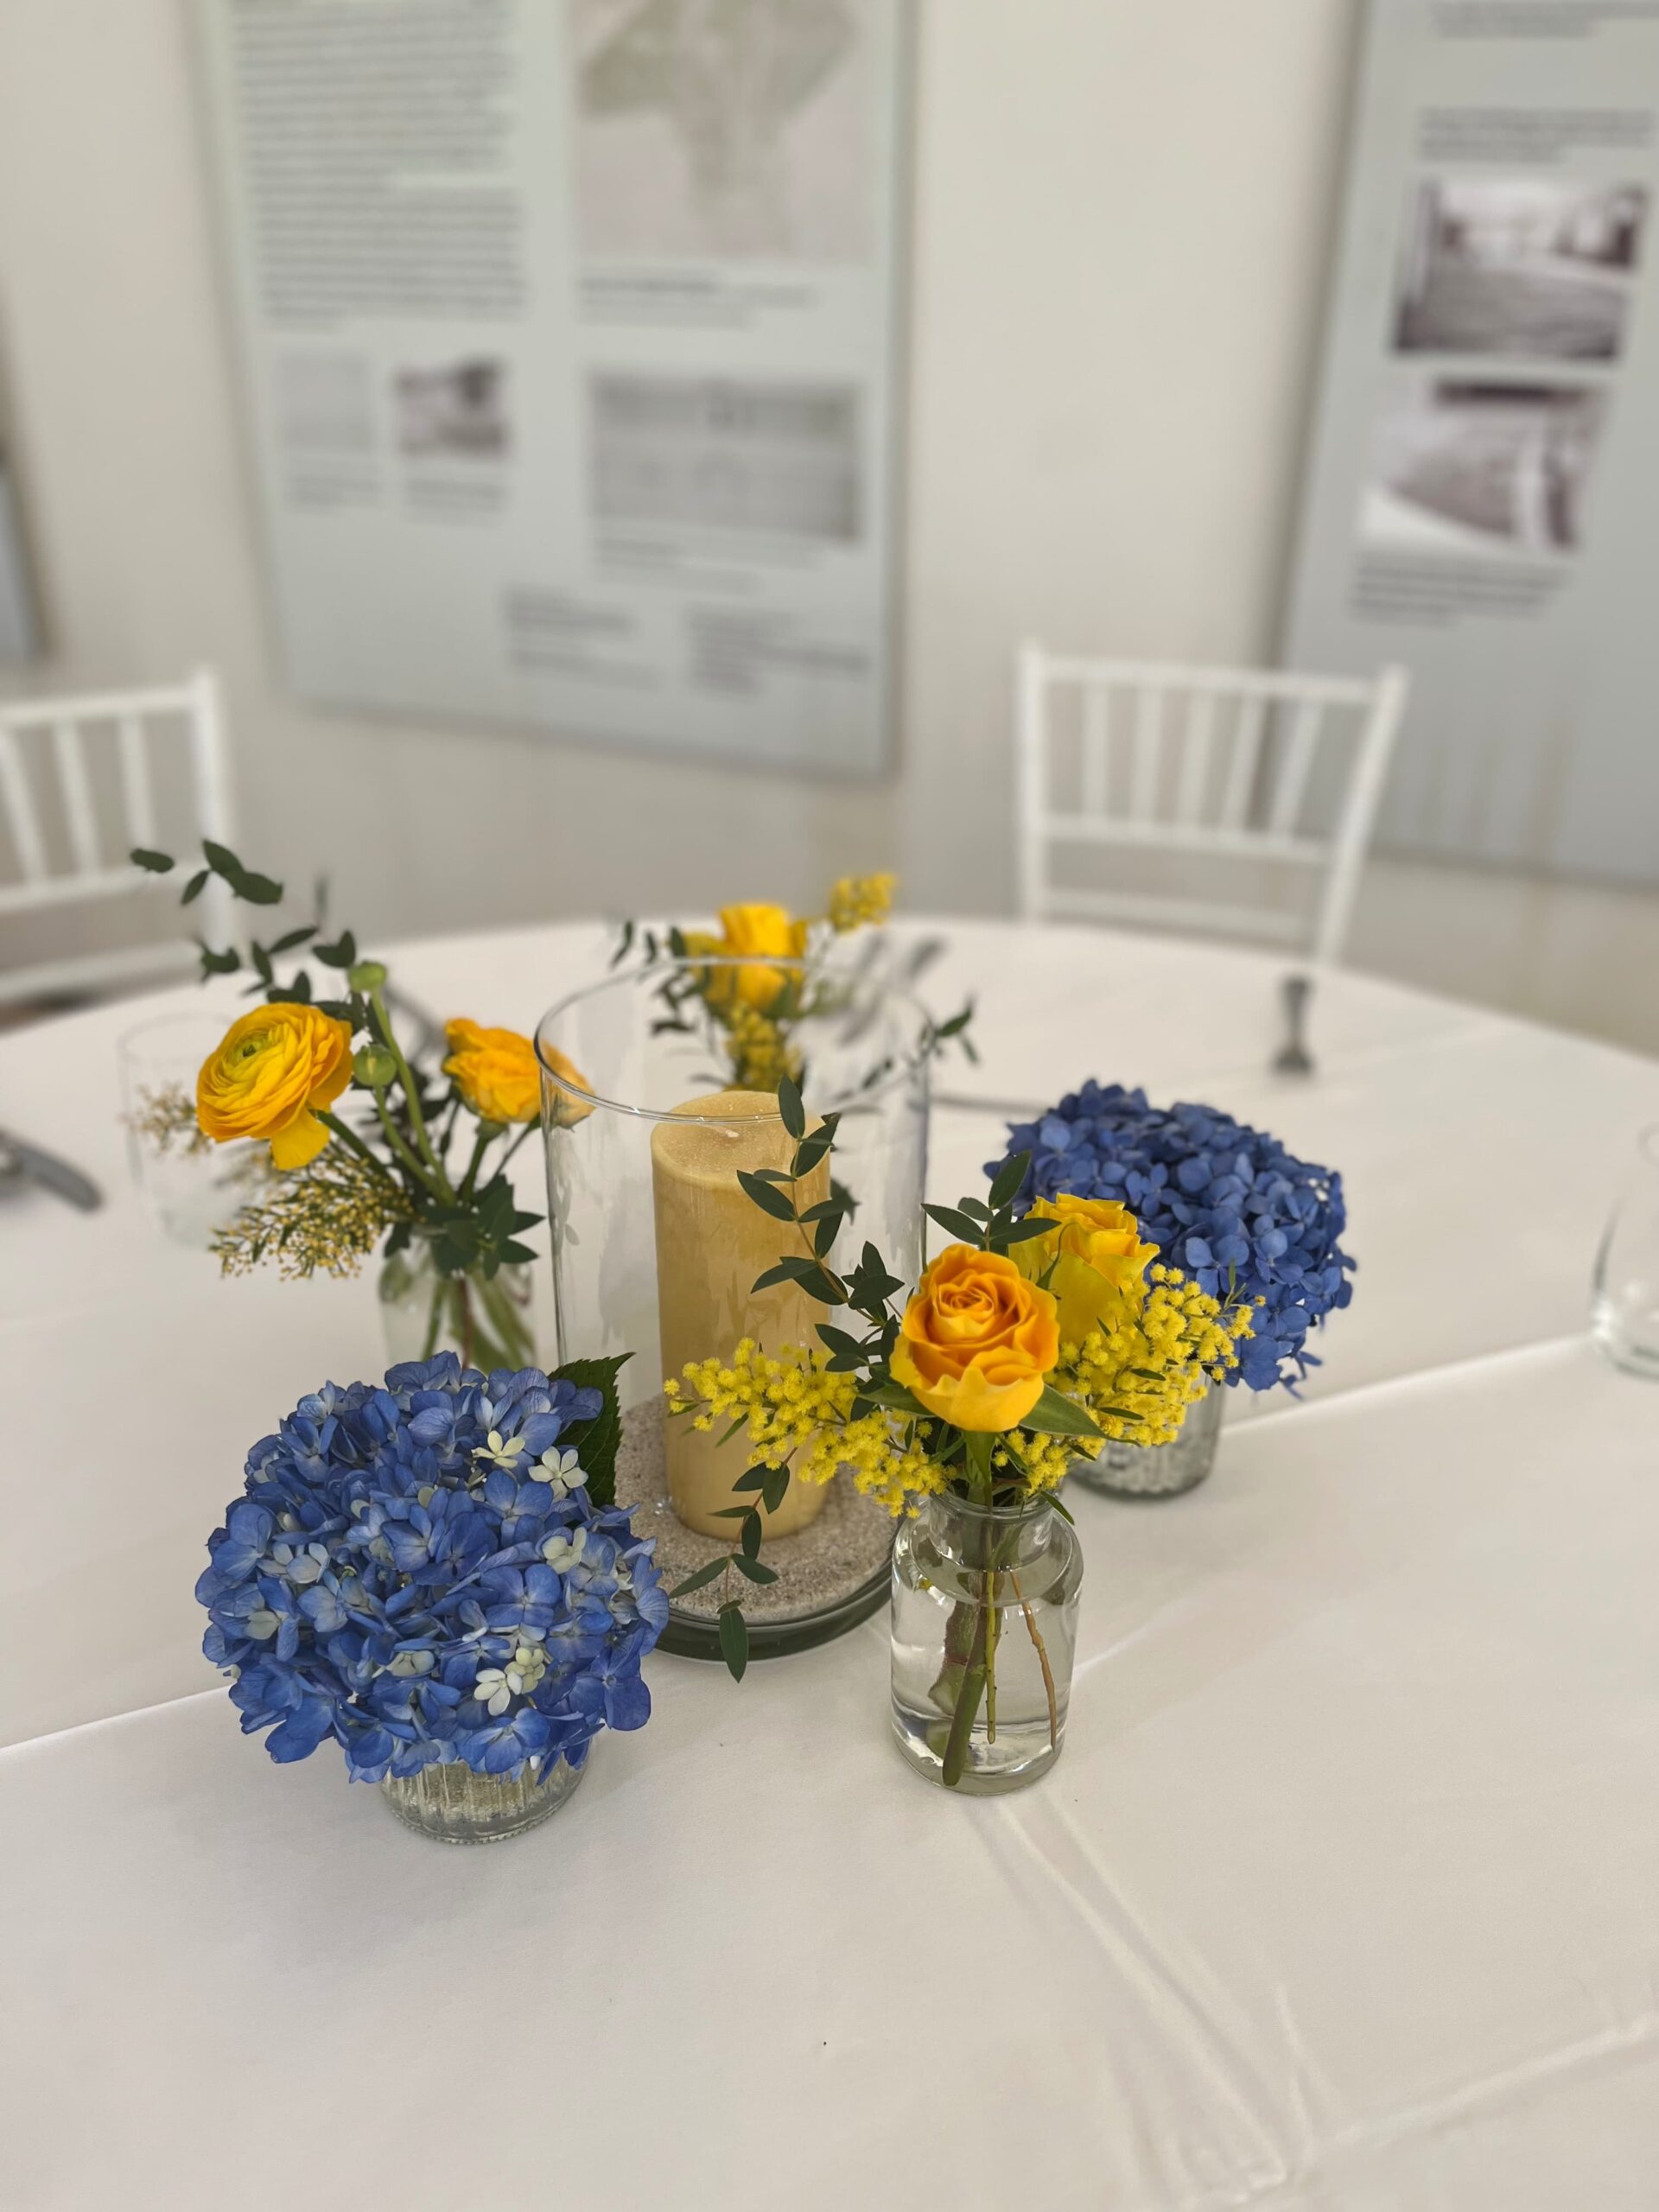 Tischdekoration in gelb-blau, gelbe Rosen, blaue Hortensien